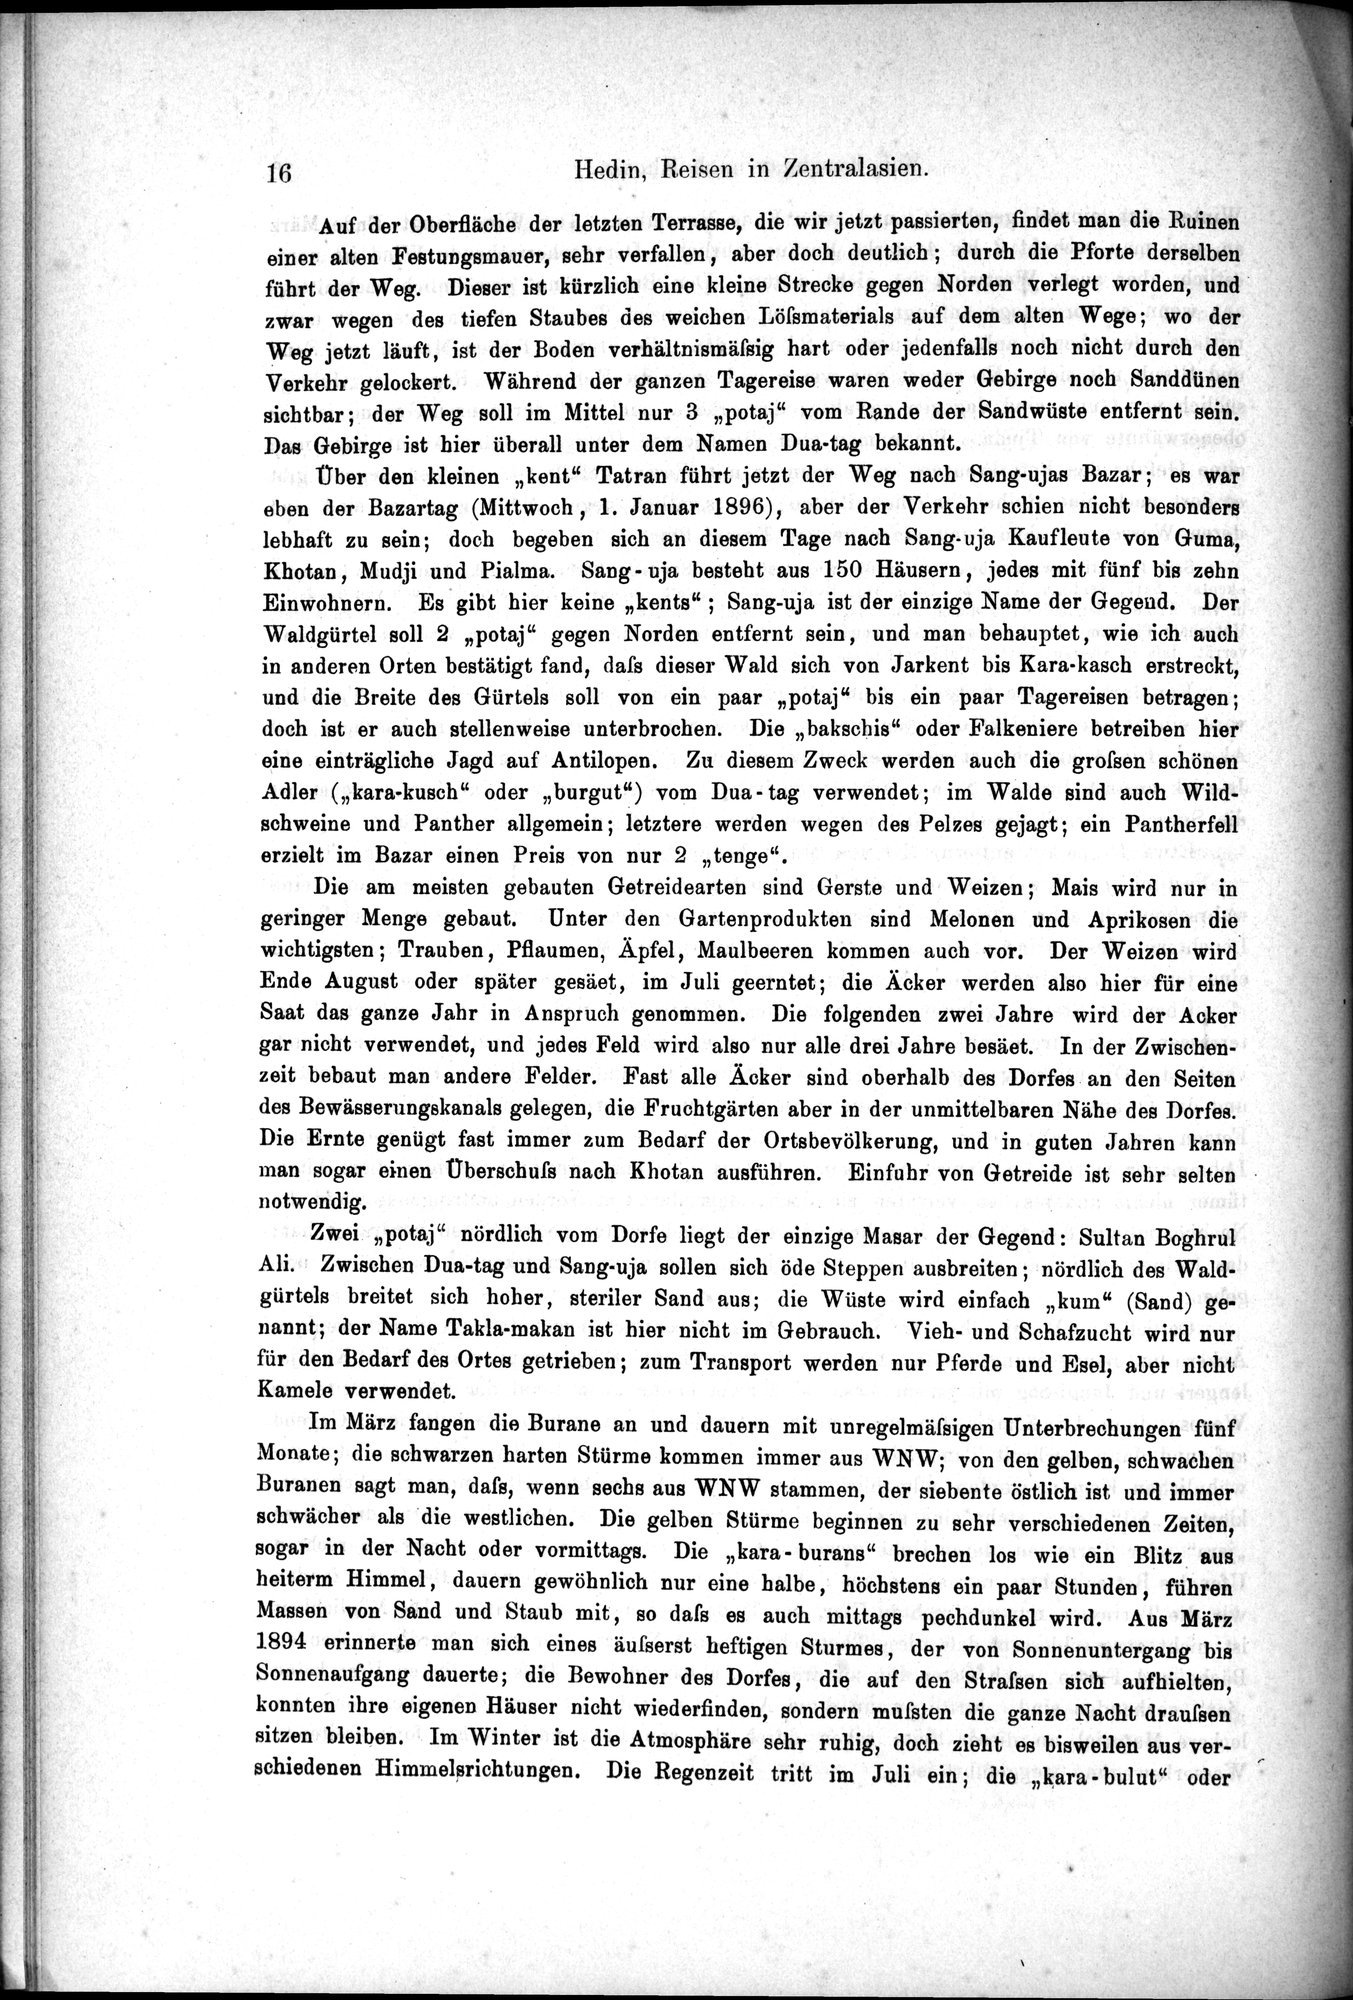 Die Geographische-Wissenschaftlichen Ergebnisse meiner Reisen in Zentralasien, 1894-1897 : vol.1 / Page 28 (Grayscale High Resolution Image)